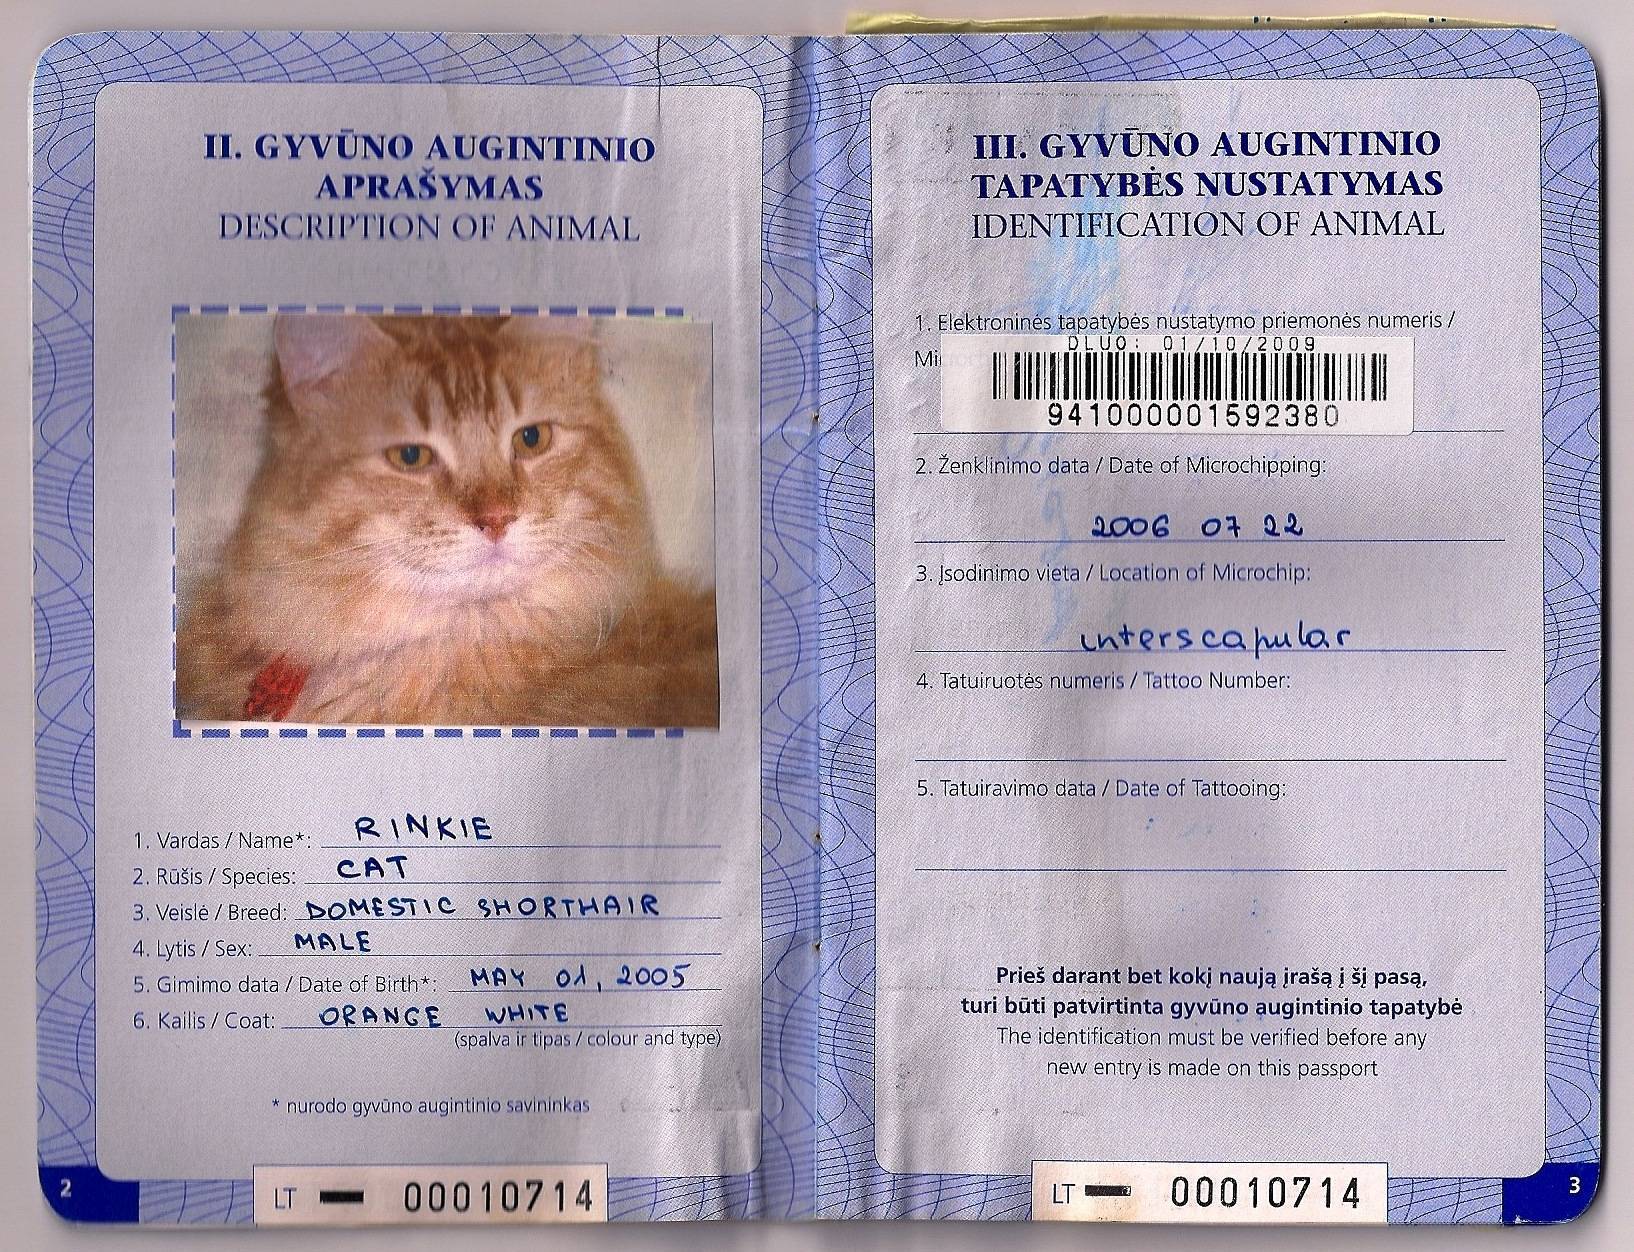 ᐉ ветеринарный паспорт для кошки - ➡ motildazoo.ru